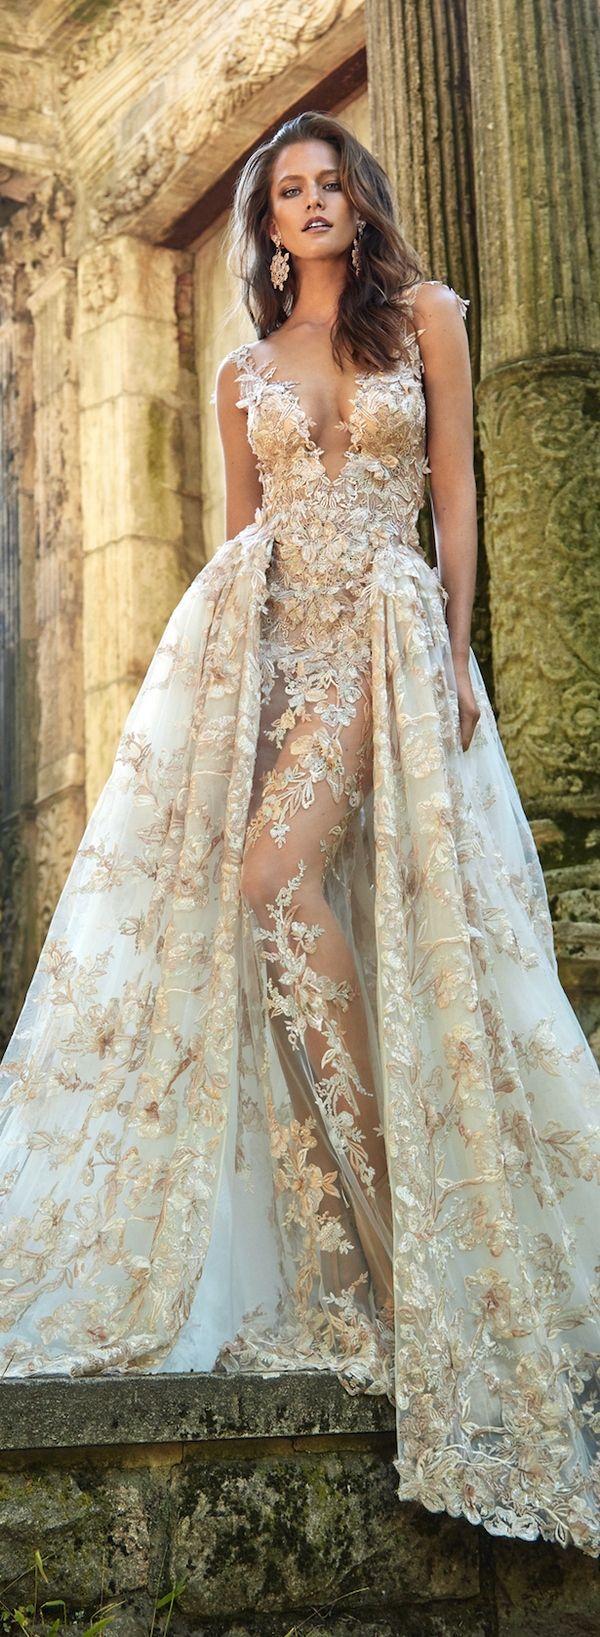 زفاف - Galia Lahav Fall 2017 Wedding Dresses – Le Secret Royal II & Gala III